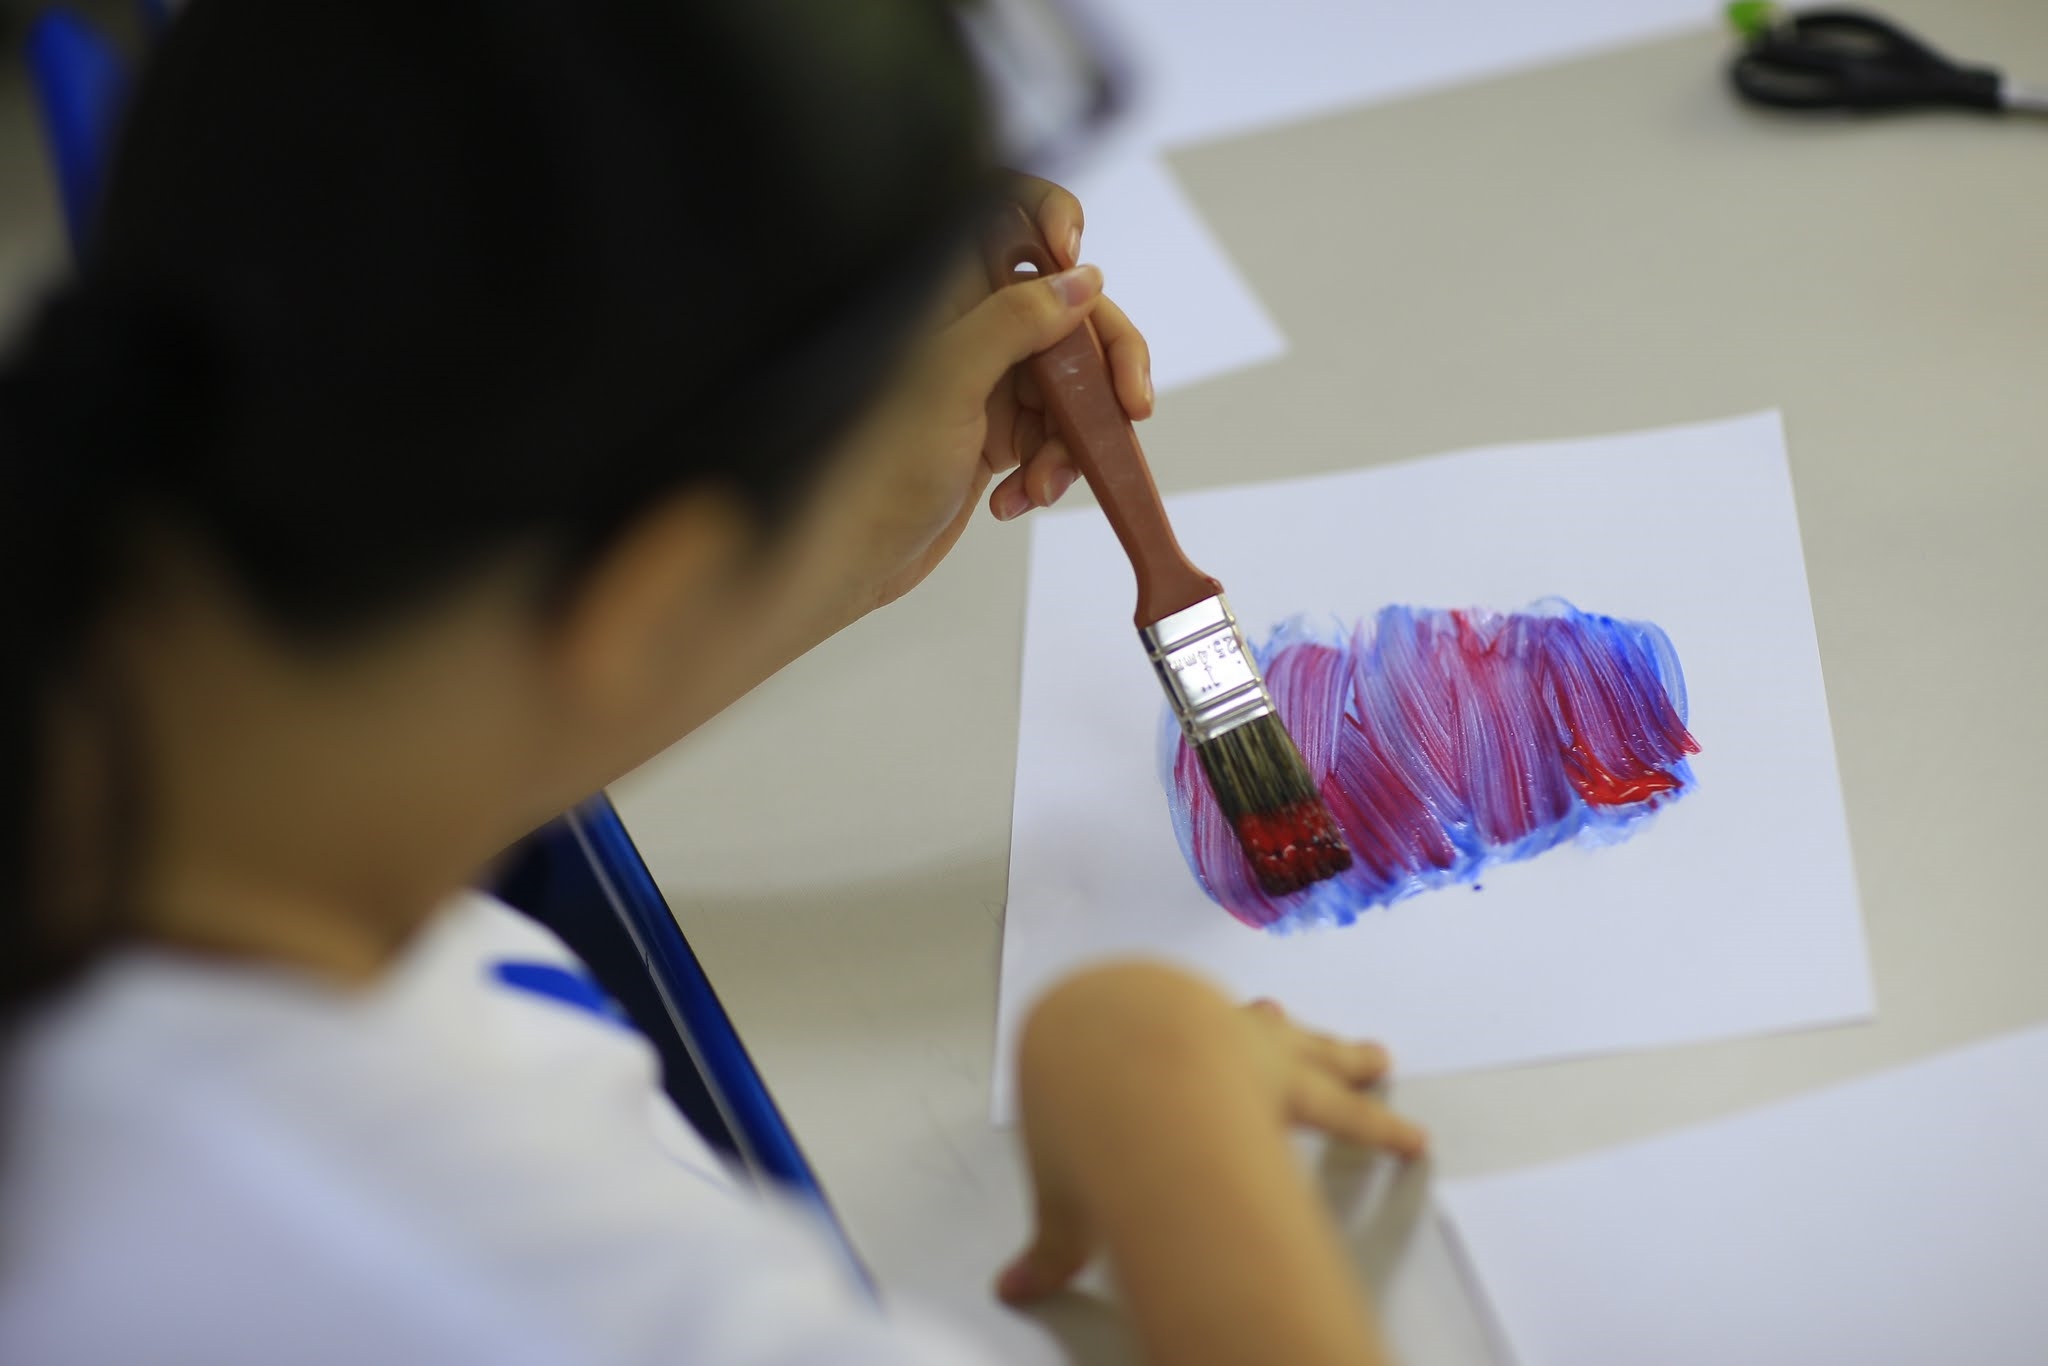 Los estudiantes tuvieron la oportunidad de participar en actividades artisticas, dentro de las aulas de UNAPEC